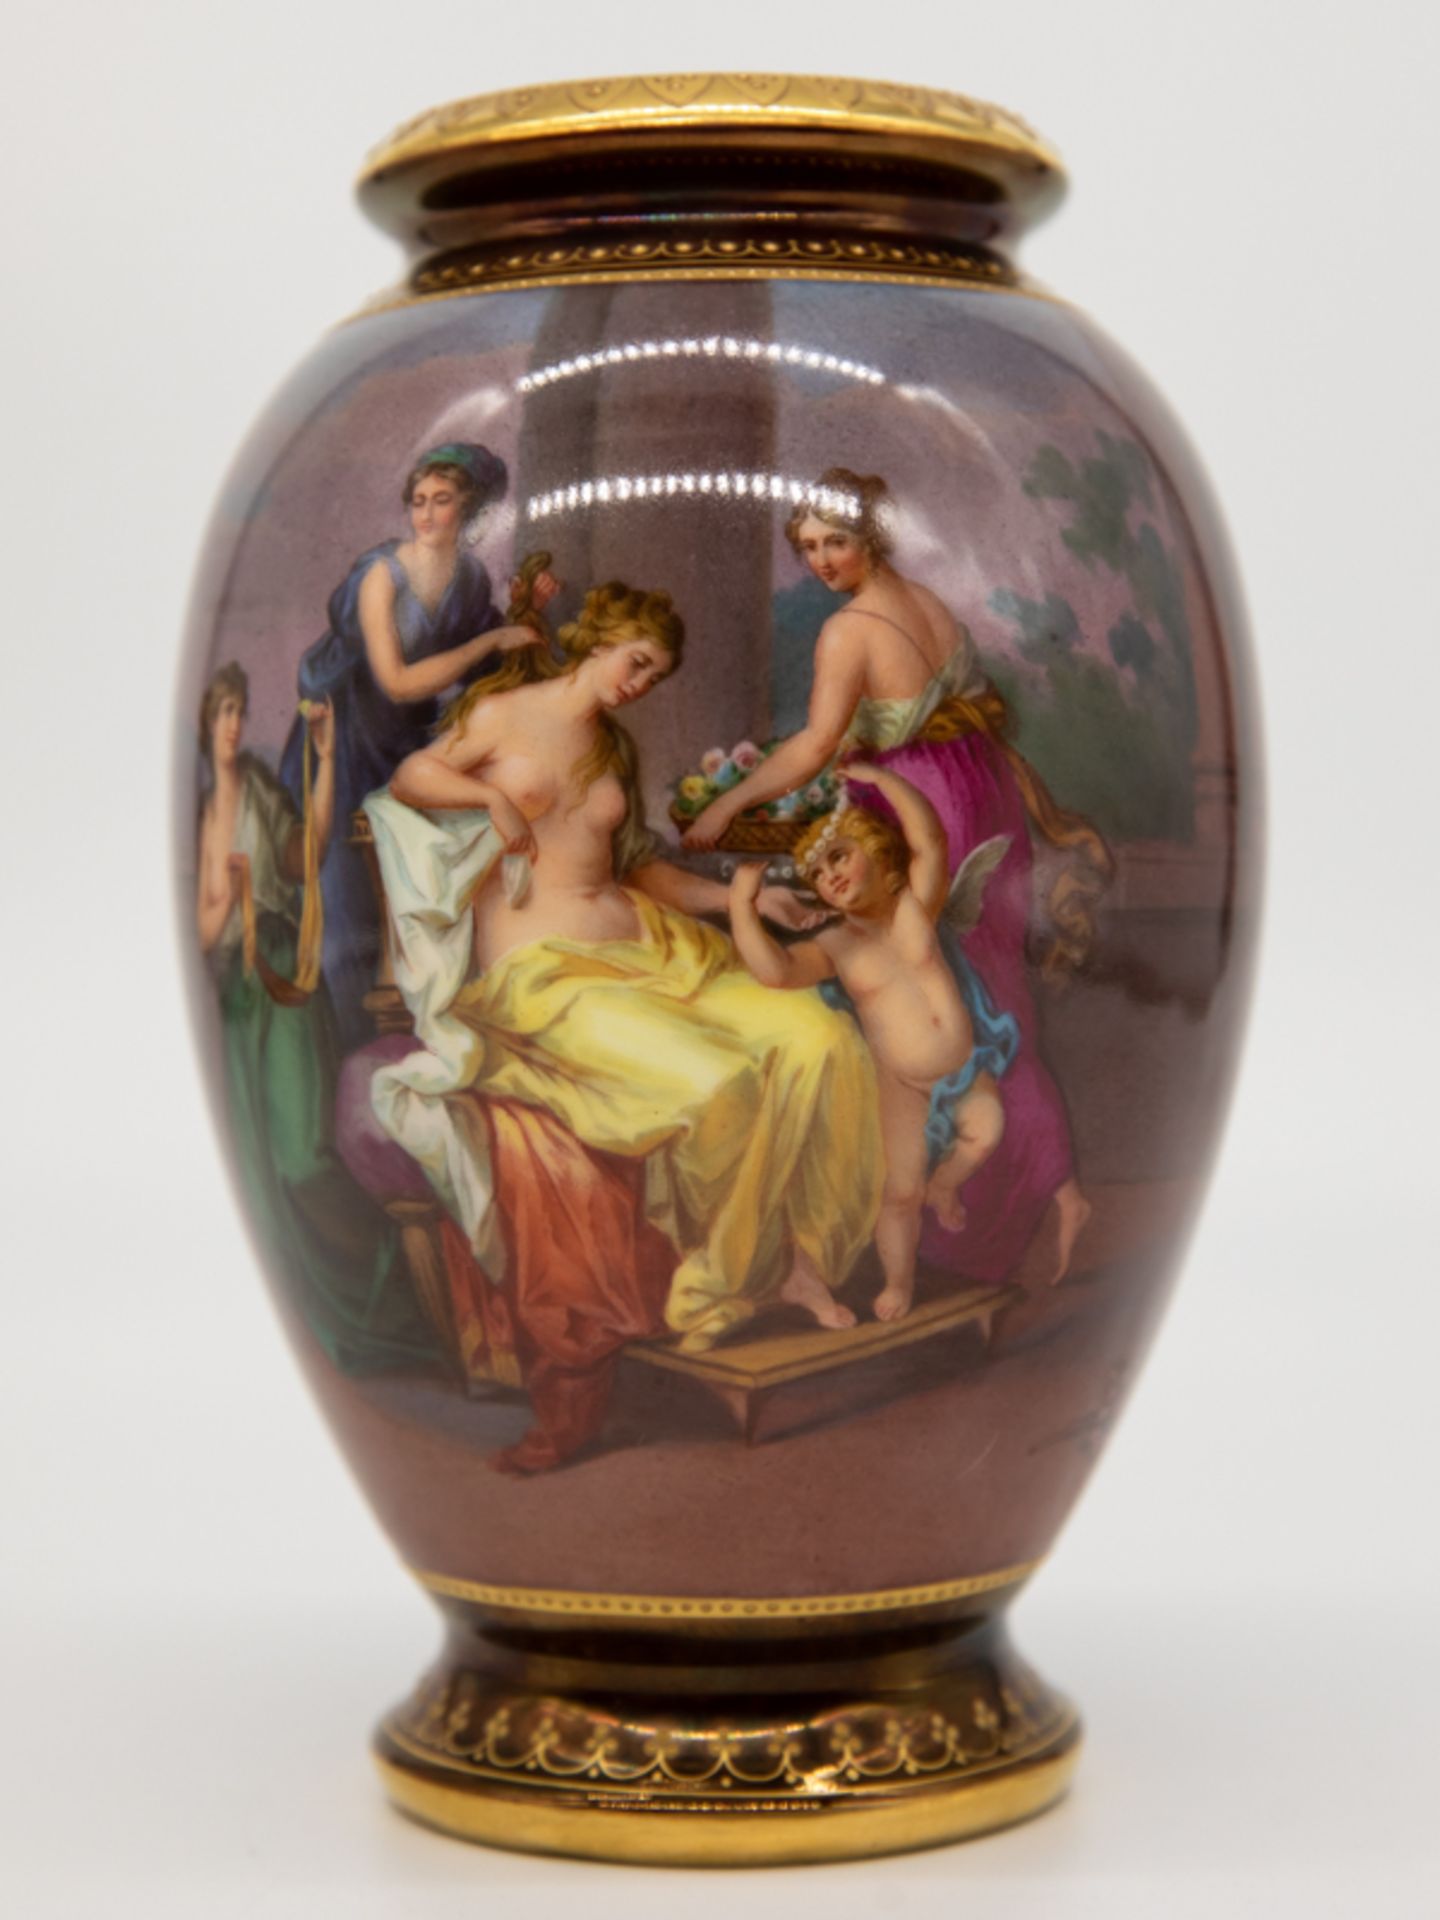 Ziervase im Stil Alt-Wien mit Motiv "Venus von den Grazien geschmückt" nach Angelika Kauffmann, - Image 4 of 4